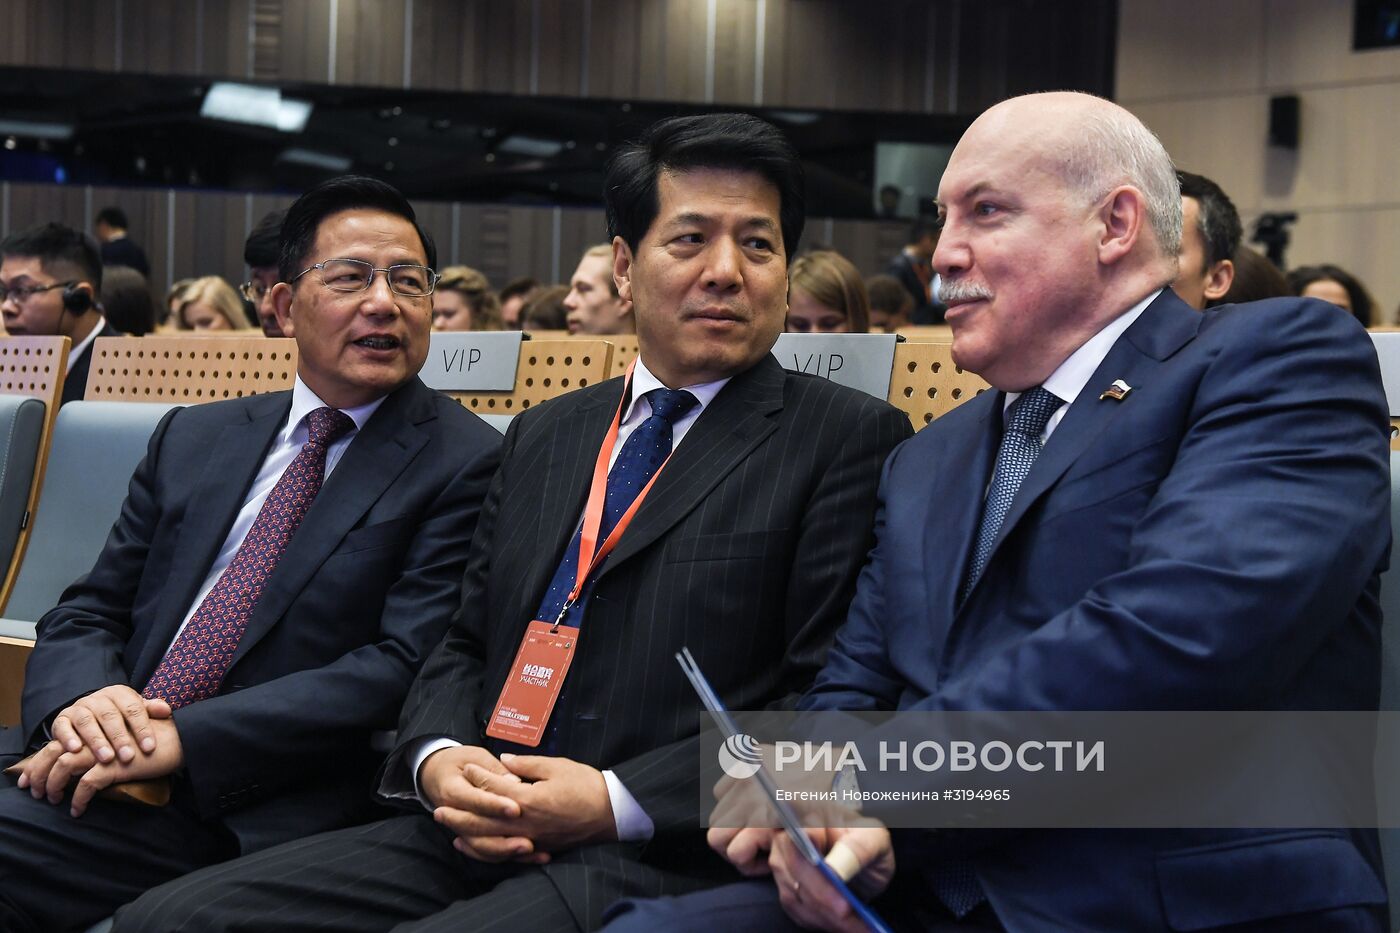 Российско-китайский форум "Москва – Пекин: торгово-экономическое и культурное сотрудничество на Шелковом пути"